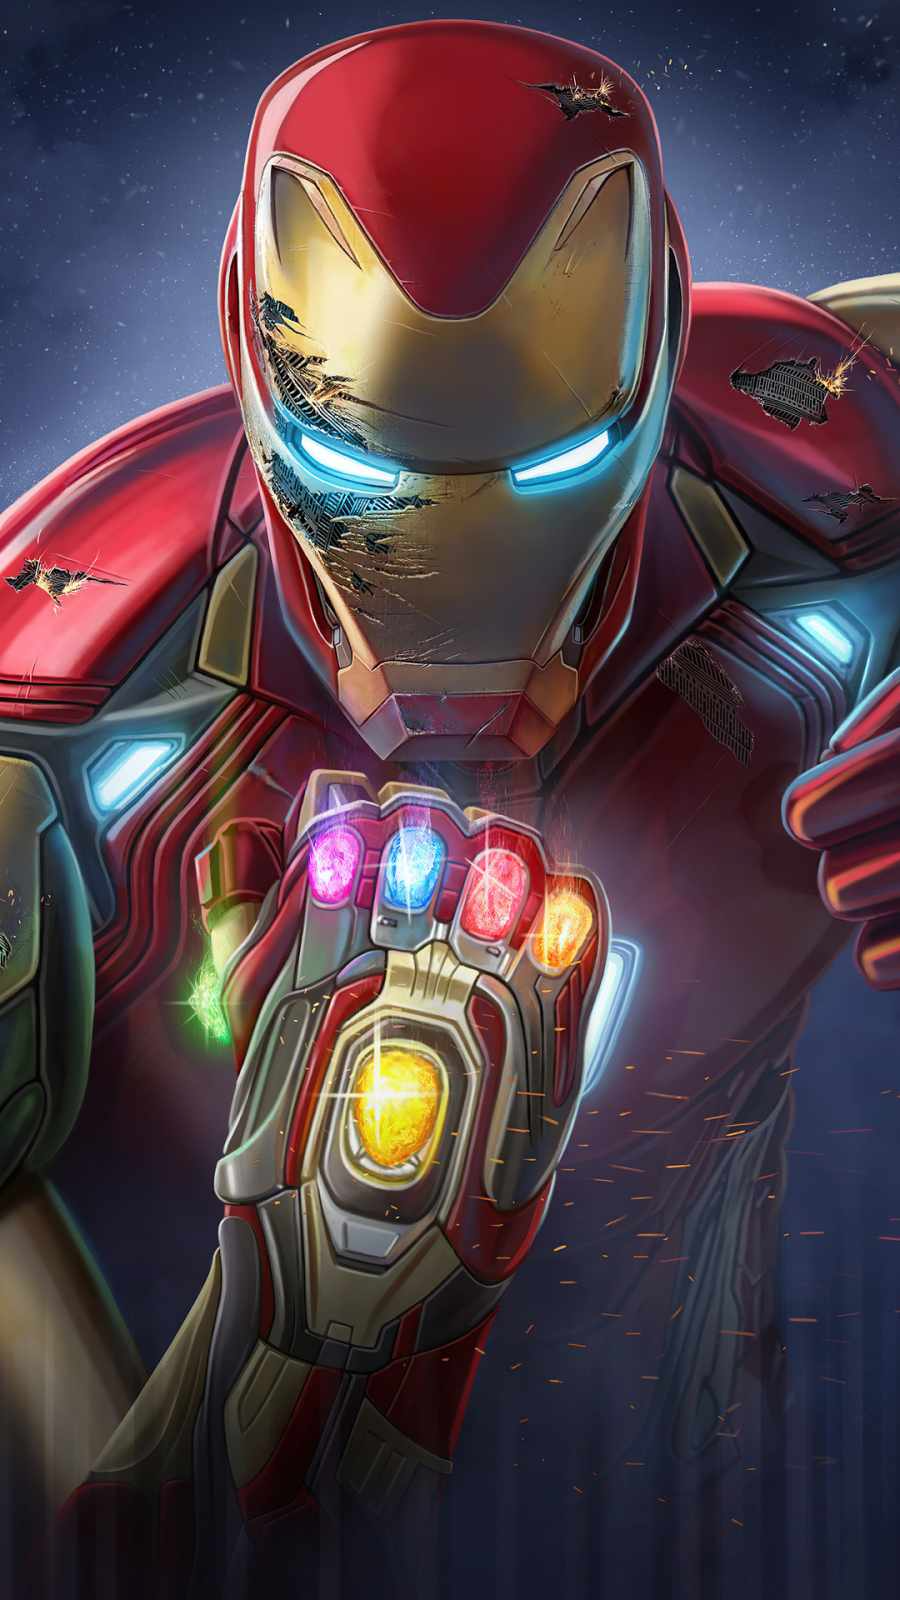 Iron Man The Avengers IPhone Wallpaper Wallpaper, iPhone Wallpaper. Iron man wallpaper, Marvel superheroes art, Iron man HD wallpaper